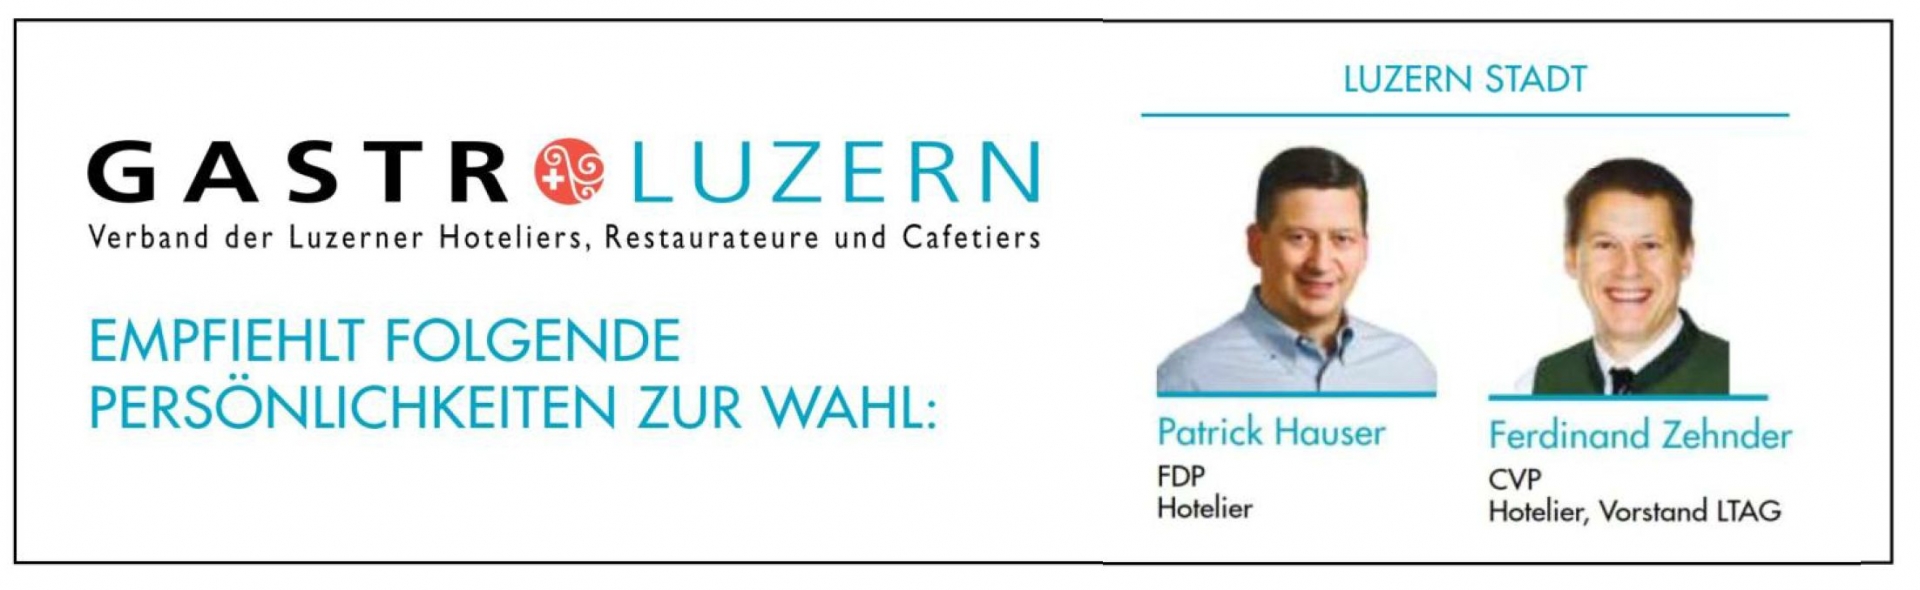 Danke für die Unterstützung durch Gastro Luzern!